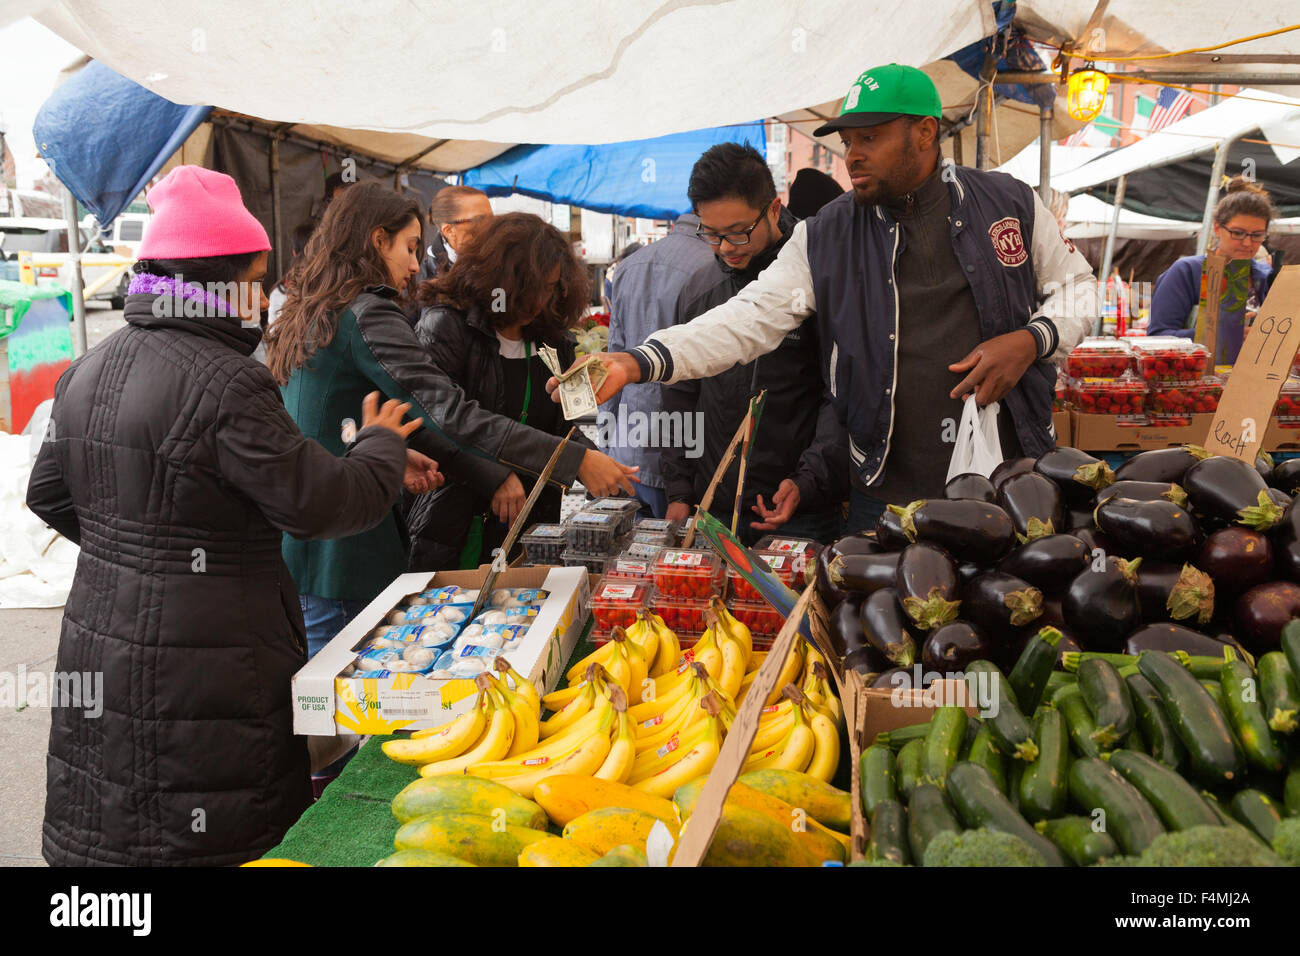 Bostonians buying fruit and veg at a market stall, Boston, Massachusetts, USA Stock Photo